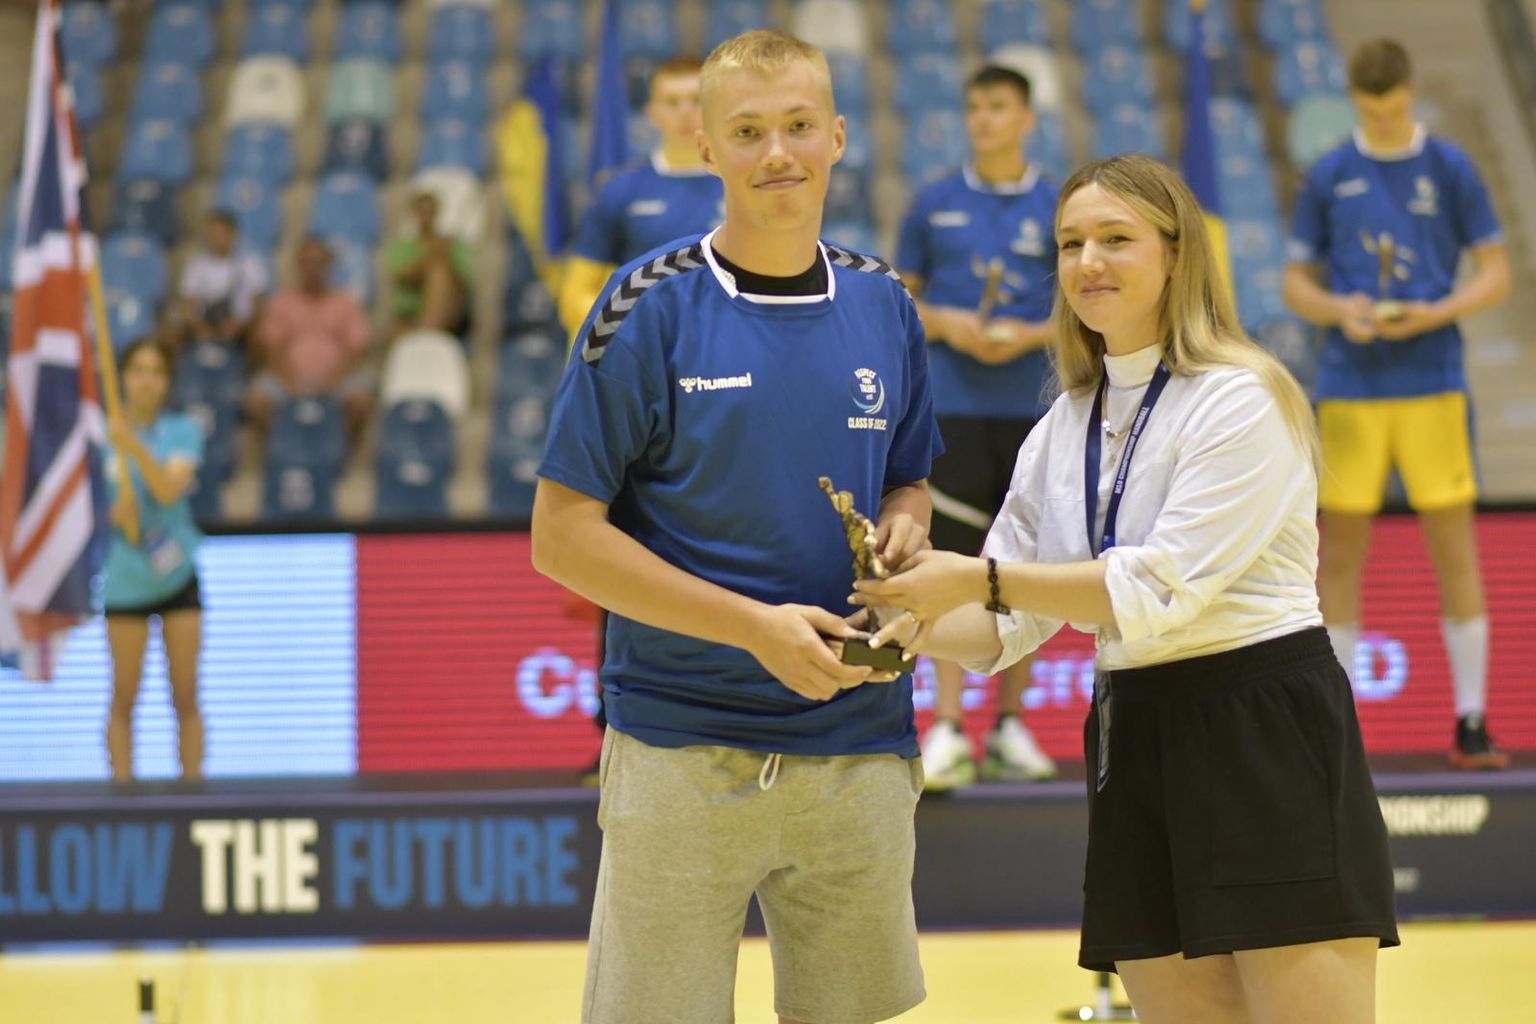 Eesti koondise mängujuht, Viljandi HC kasvandik, 18-aastane Hendrik Koks valiti Rumeenias peetud U18 Euroopa meistrivõistlustel B-divisjonis sümboolses koosseisus turniiri parimaks mängujuhiks.